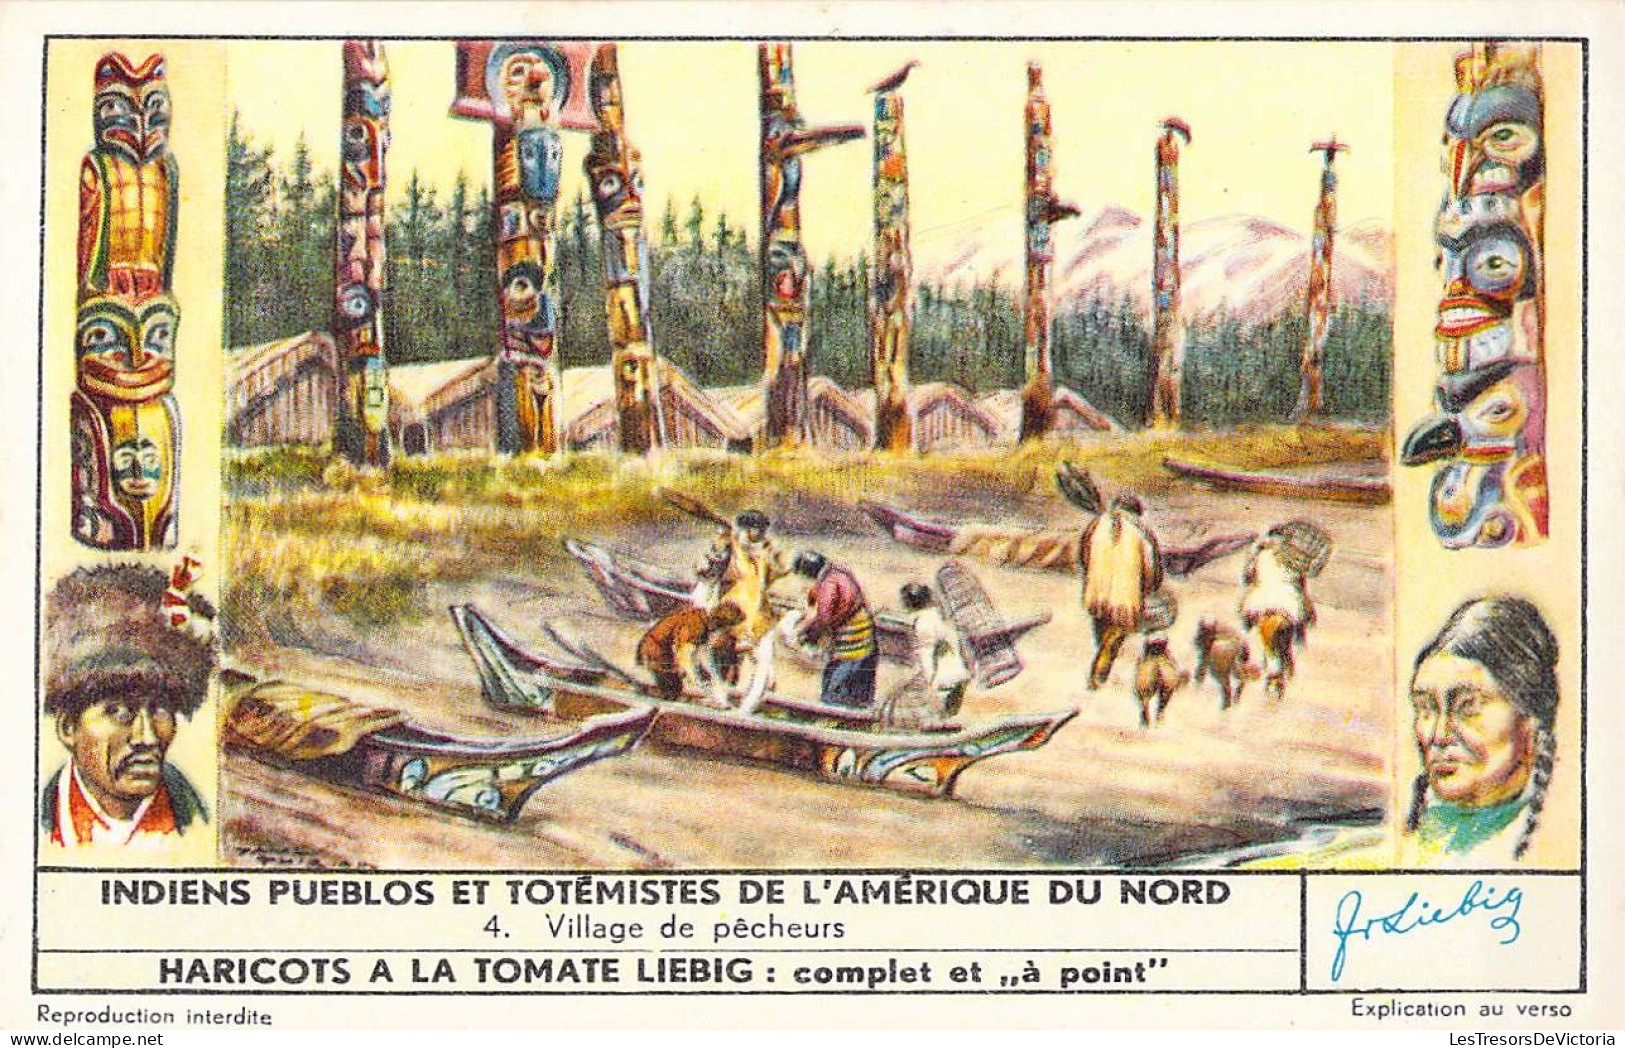 Lot de 4 chromos Liebieg - Indiens pueblos et totemistes de l'amérique du nord